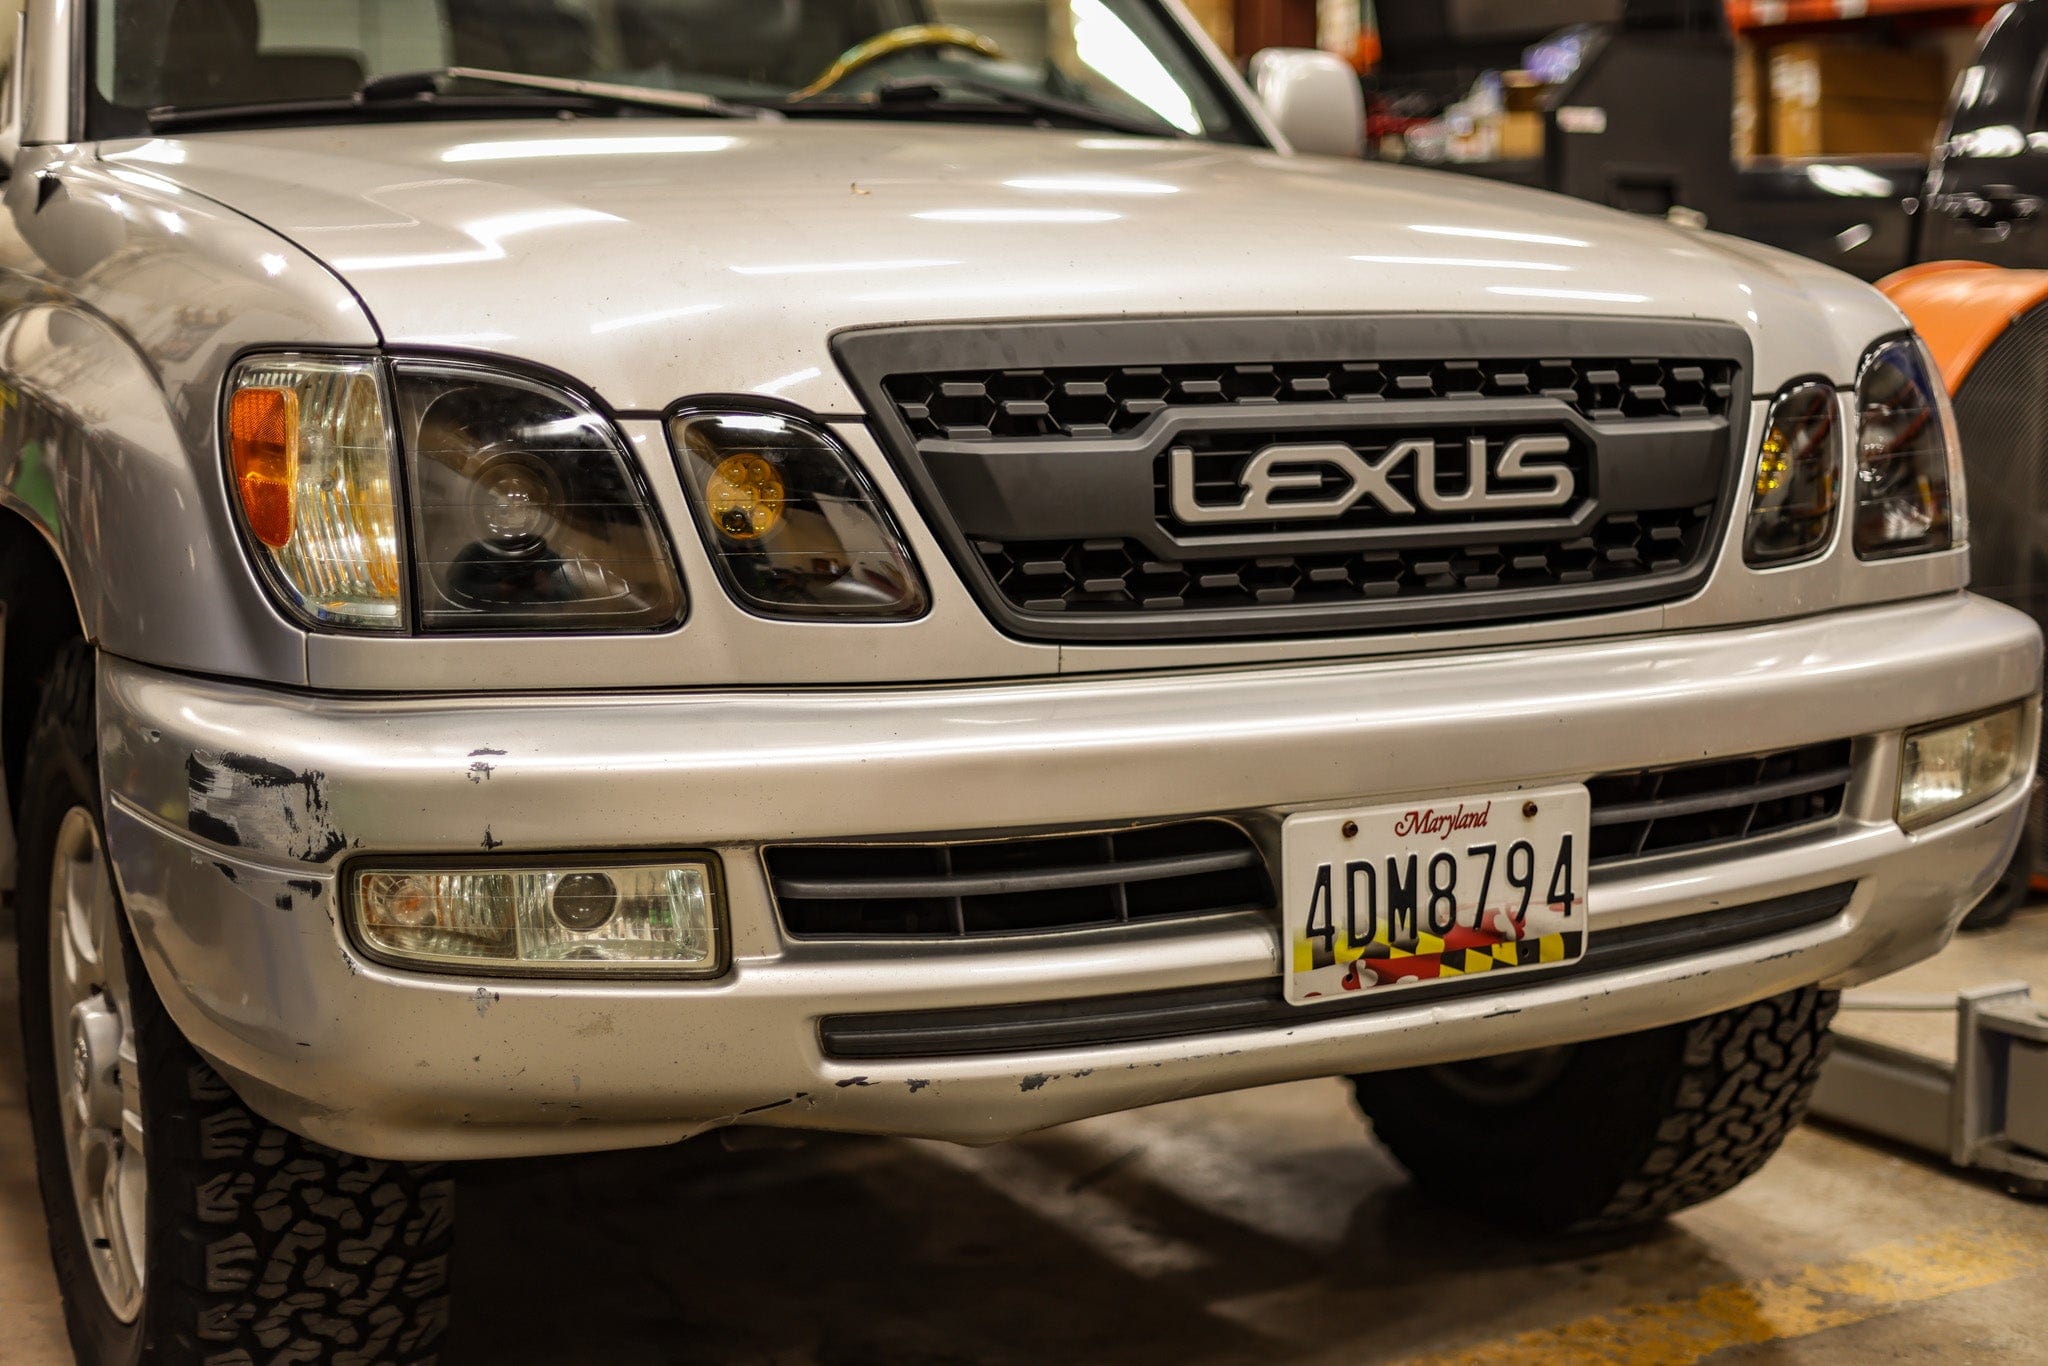 TEQ Customs LLC Headlights Retrofit Headlights / Lexus LX470 (98-07) / TEQ Customs